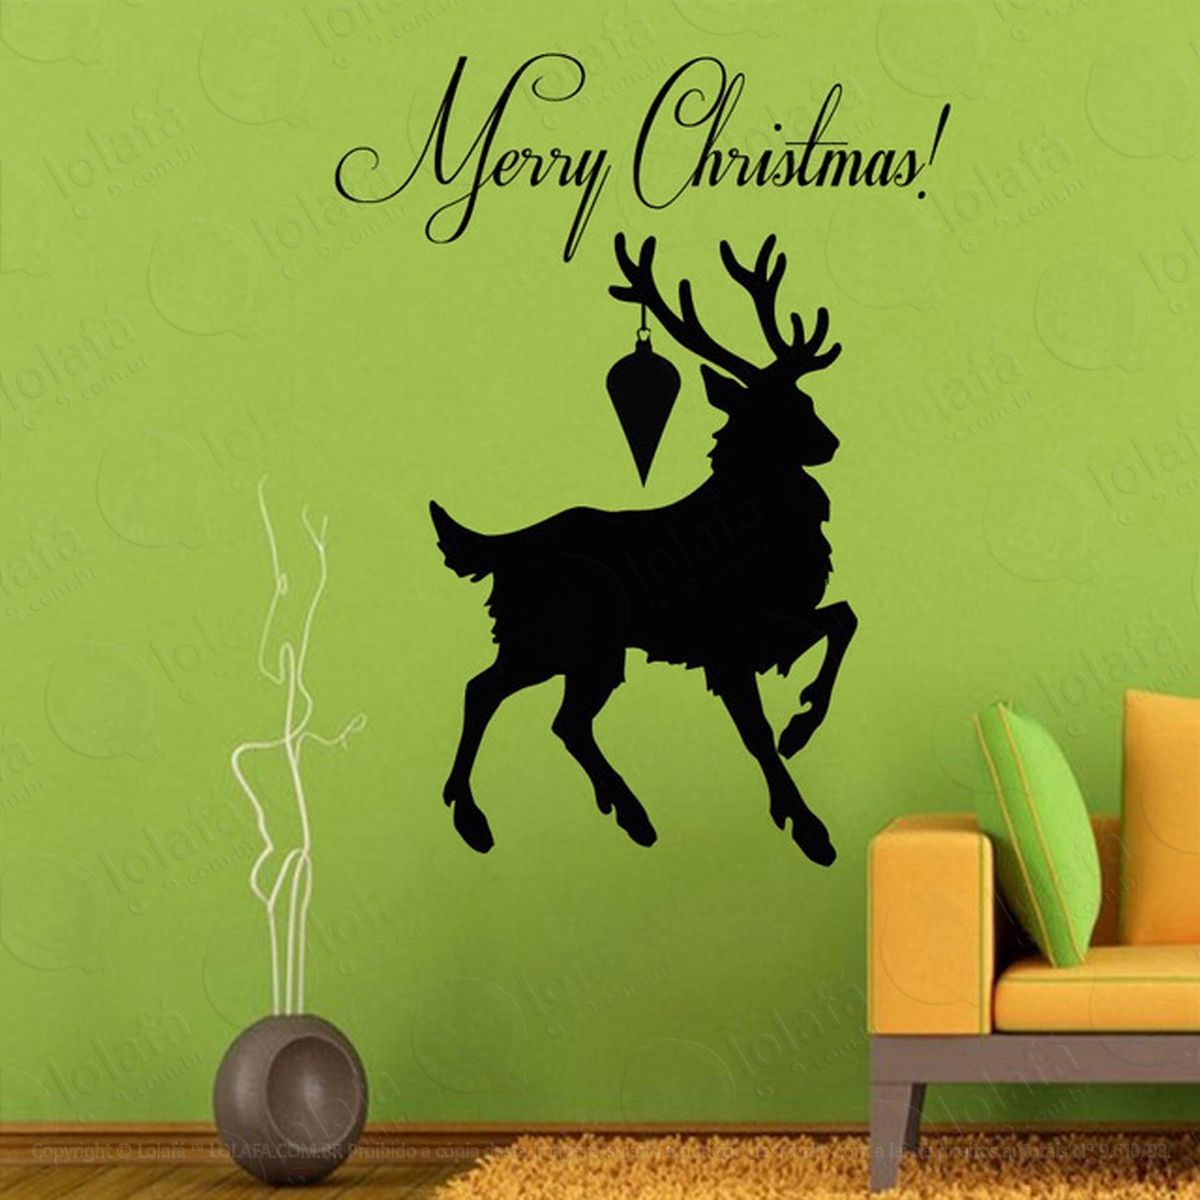 cervos adesivo de natal para vitrine, parede, porta de vidro - decoração natalina mod:69